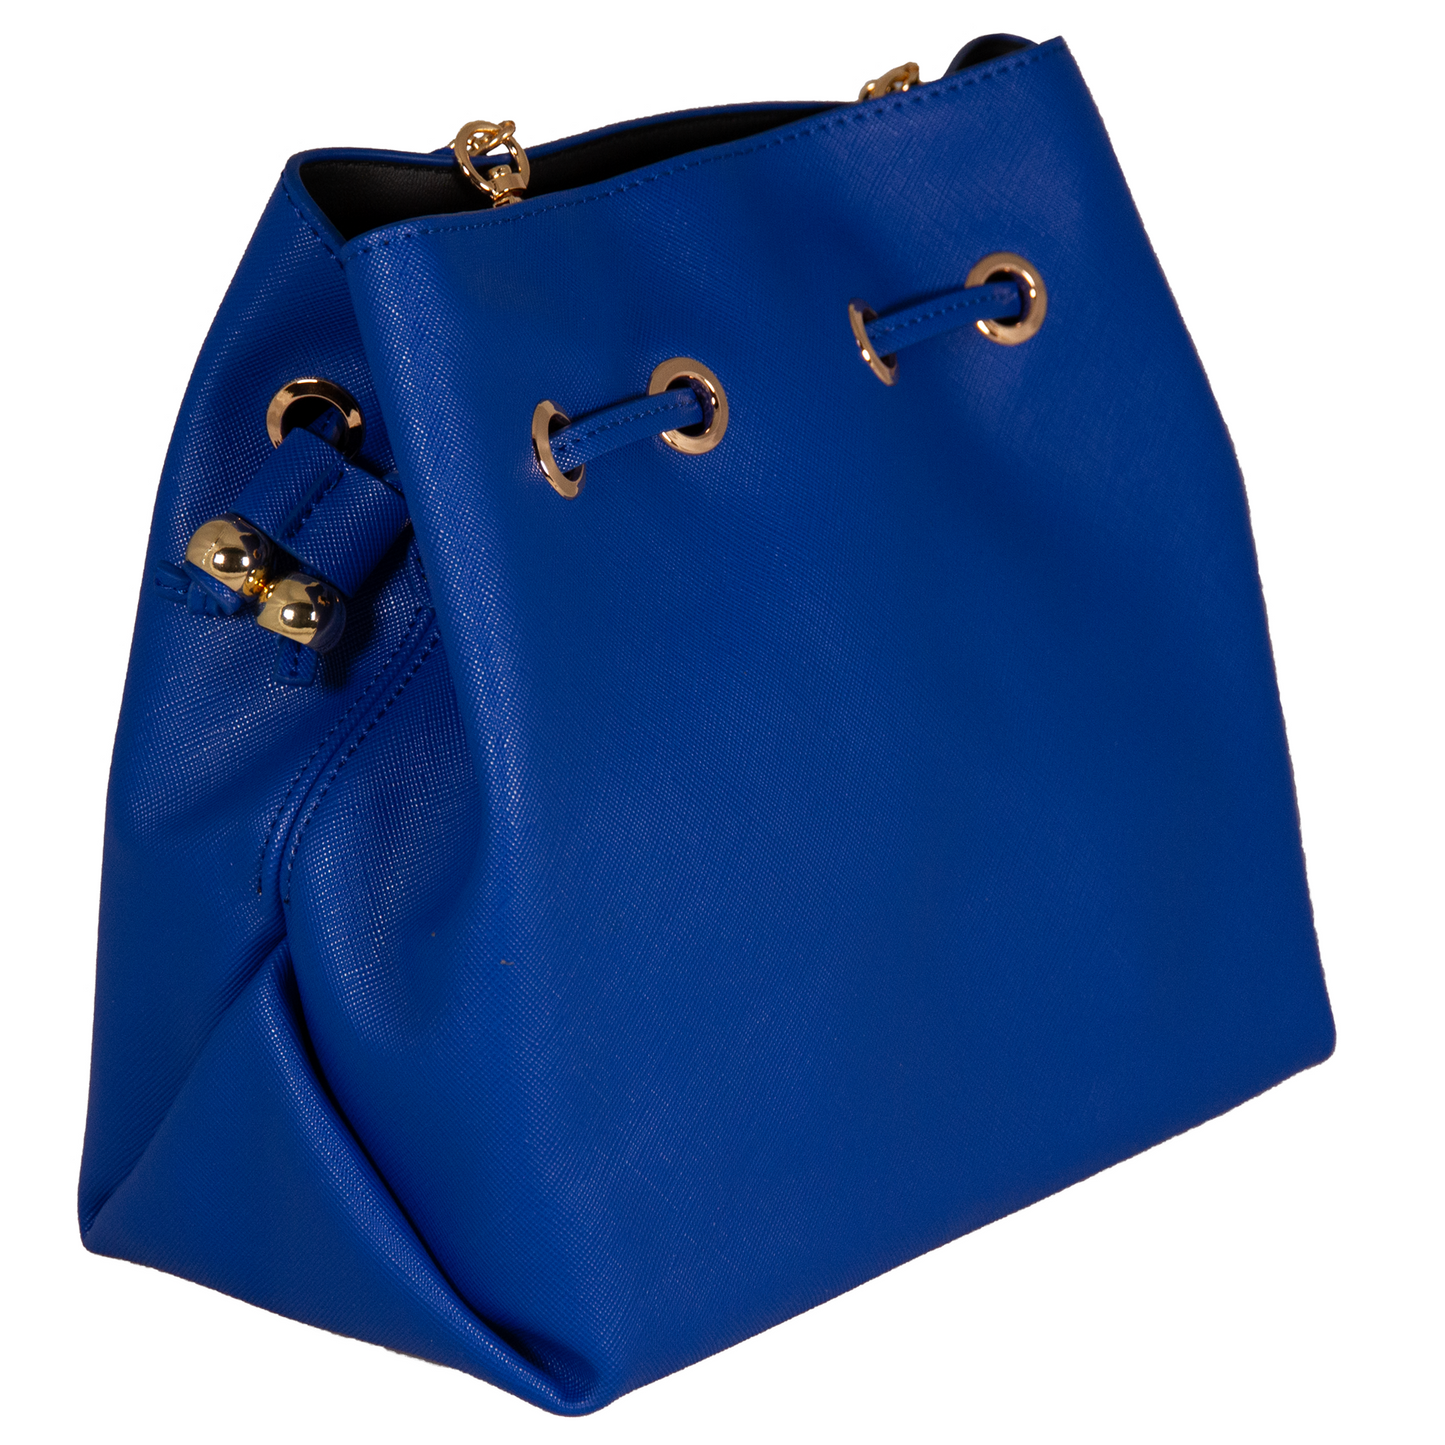 UNTRUE Women’s Haute Couture Gold Chain Drawstring Pouch Design Top-Handle Shoulder Bag Handbag Vegan Leather (ONMZ) - Blue